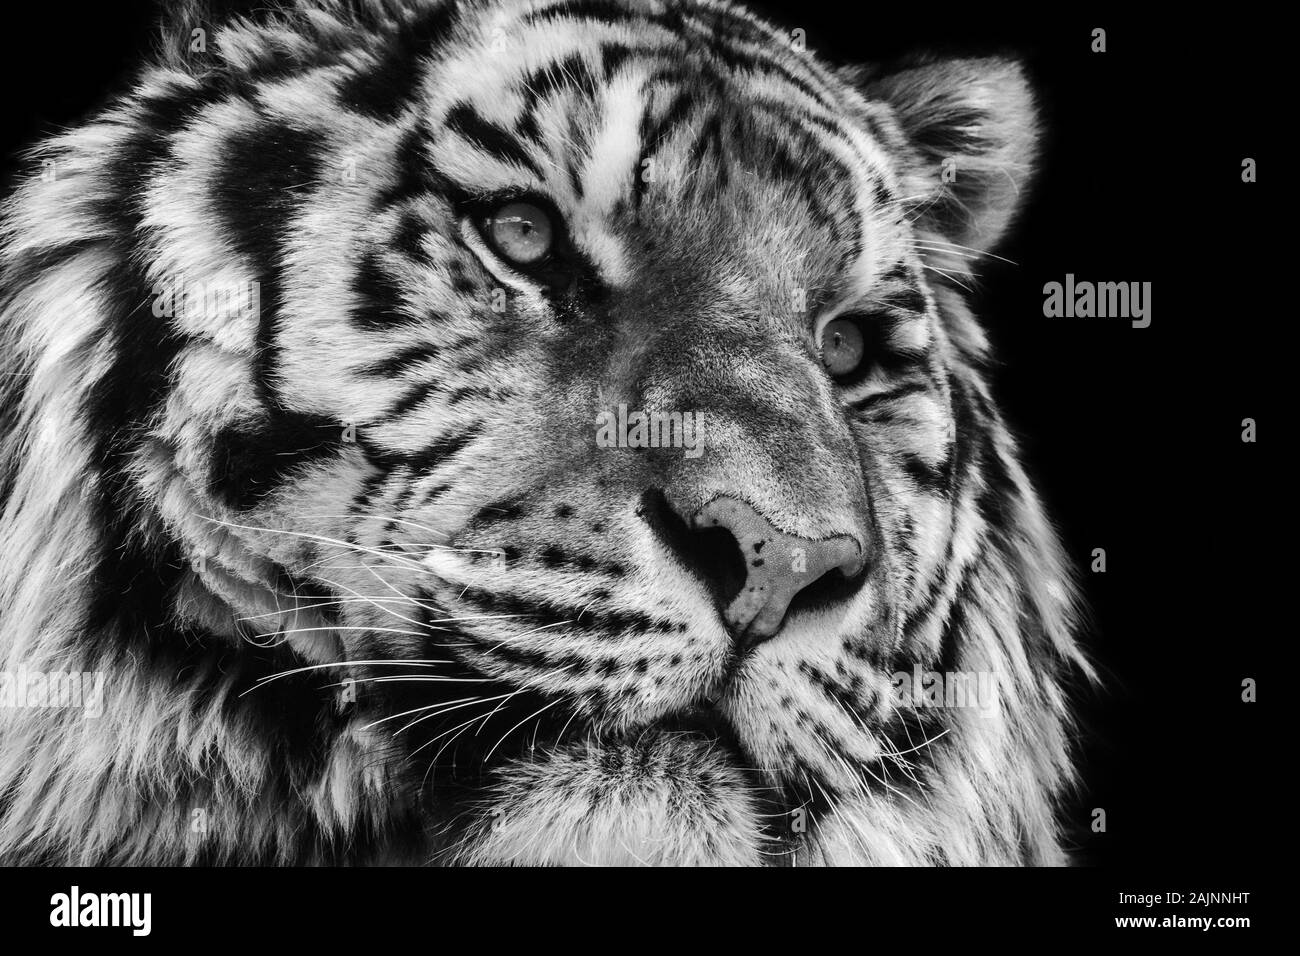 Potente de alto contraste en blanco y negro animal tigre retrato de una cara Foto de stock